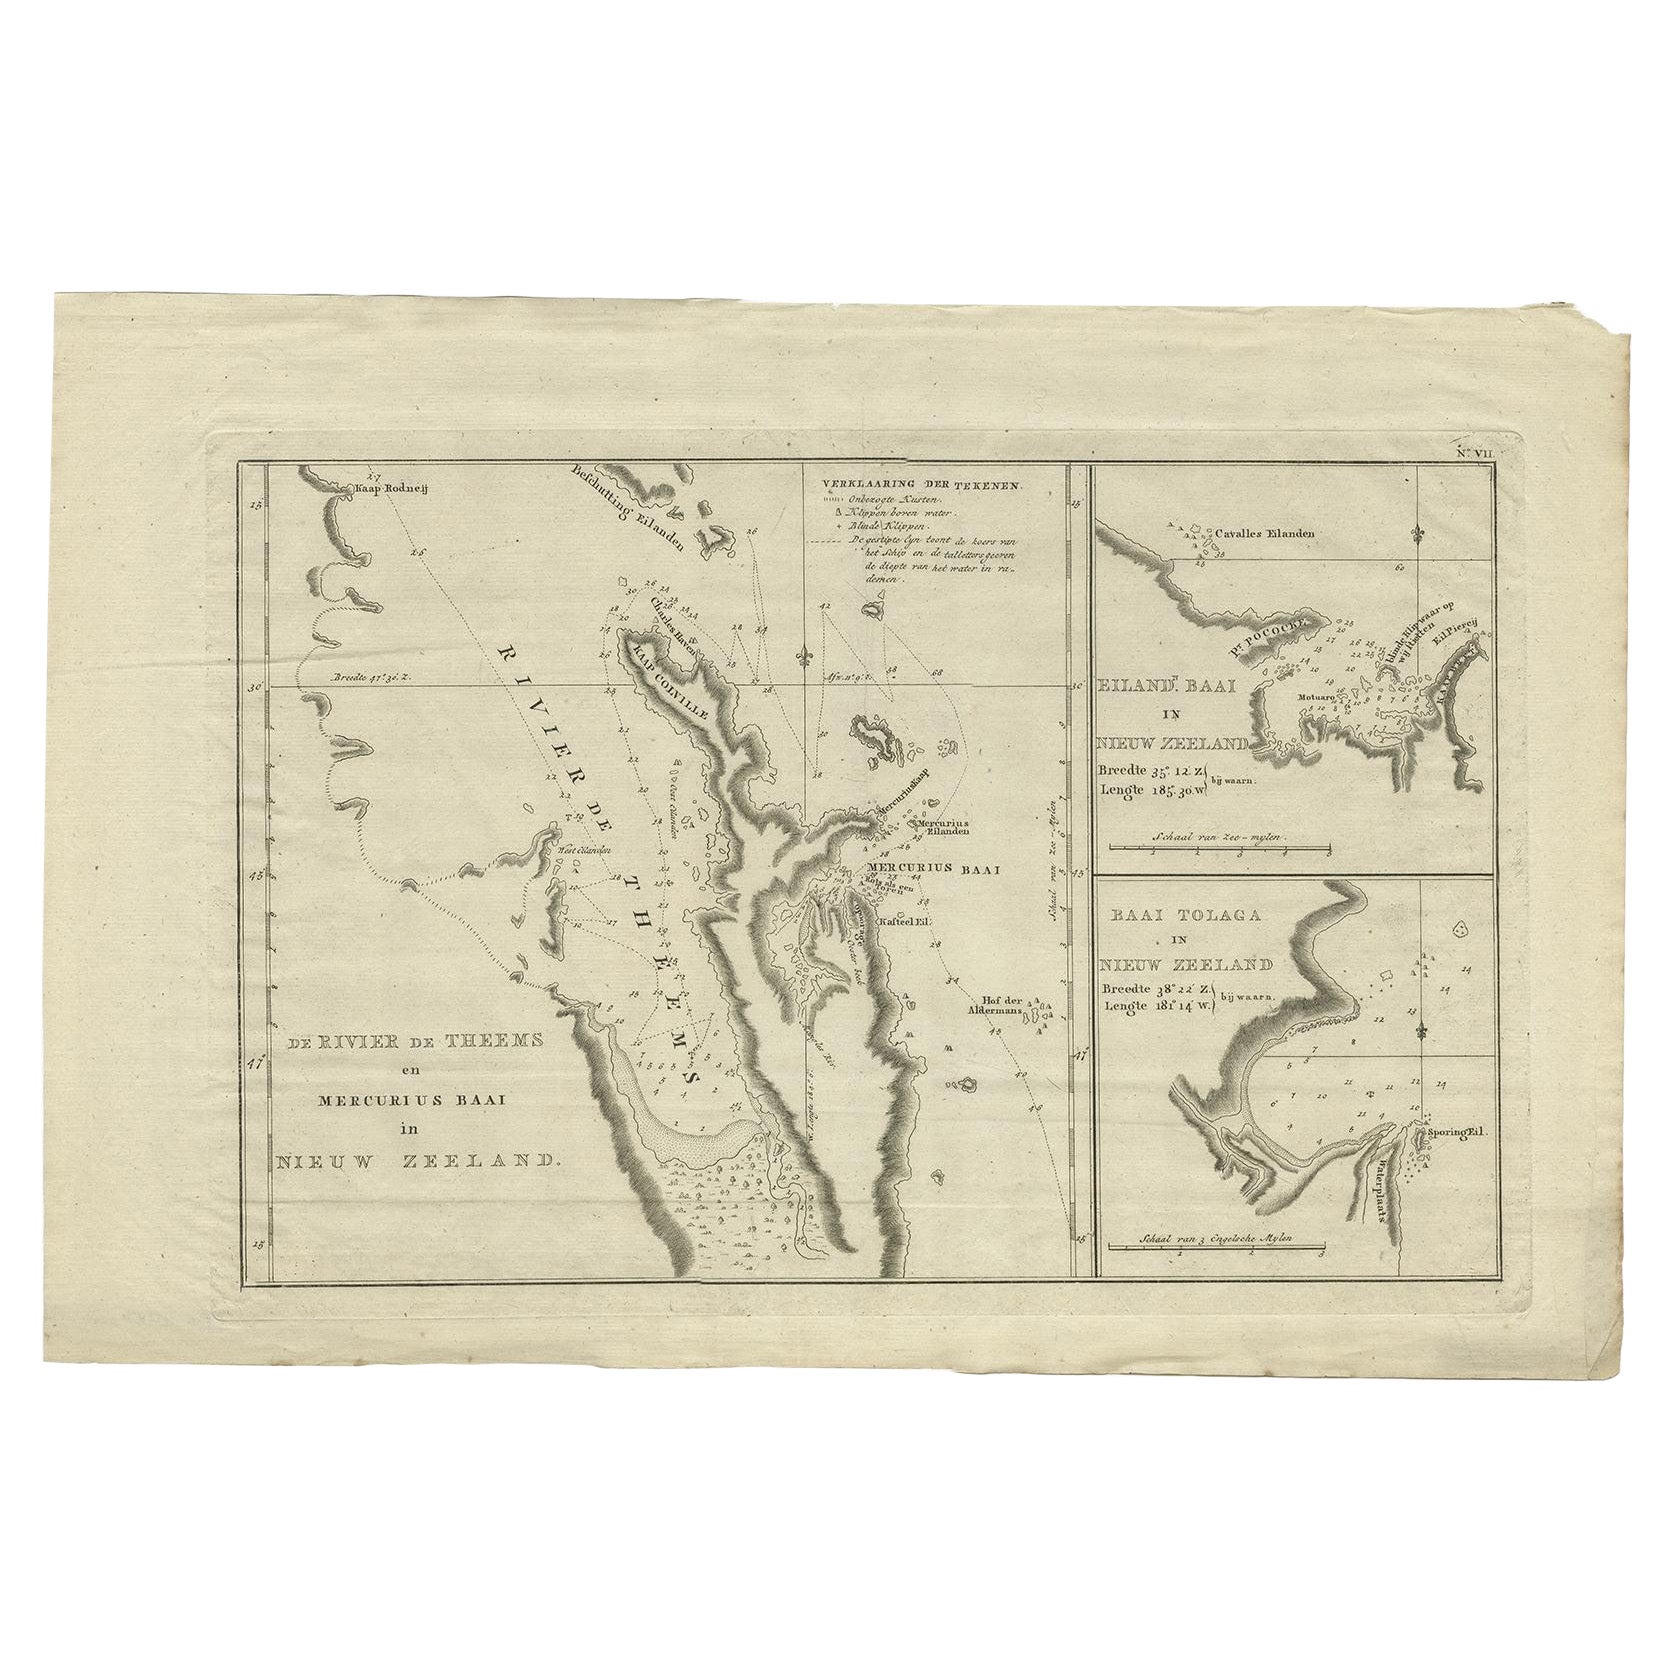 Detaillierte Karte von Neuseeland mit der Route von Capt. Cooks erste Reise, 1803